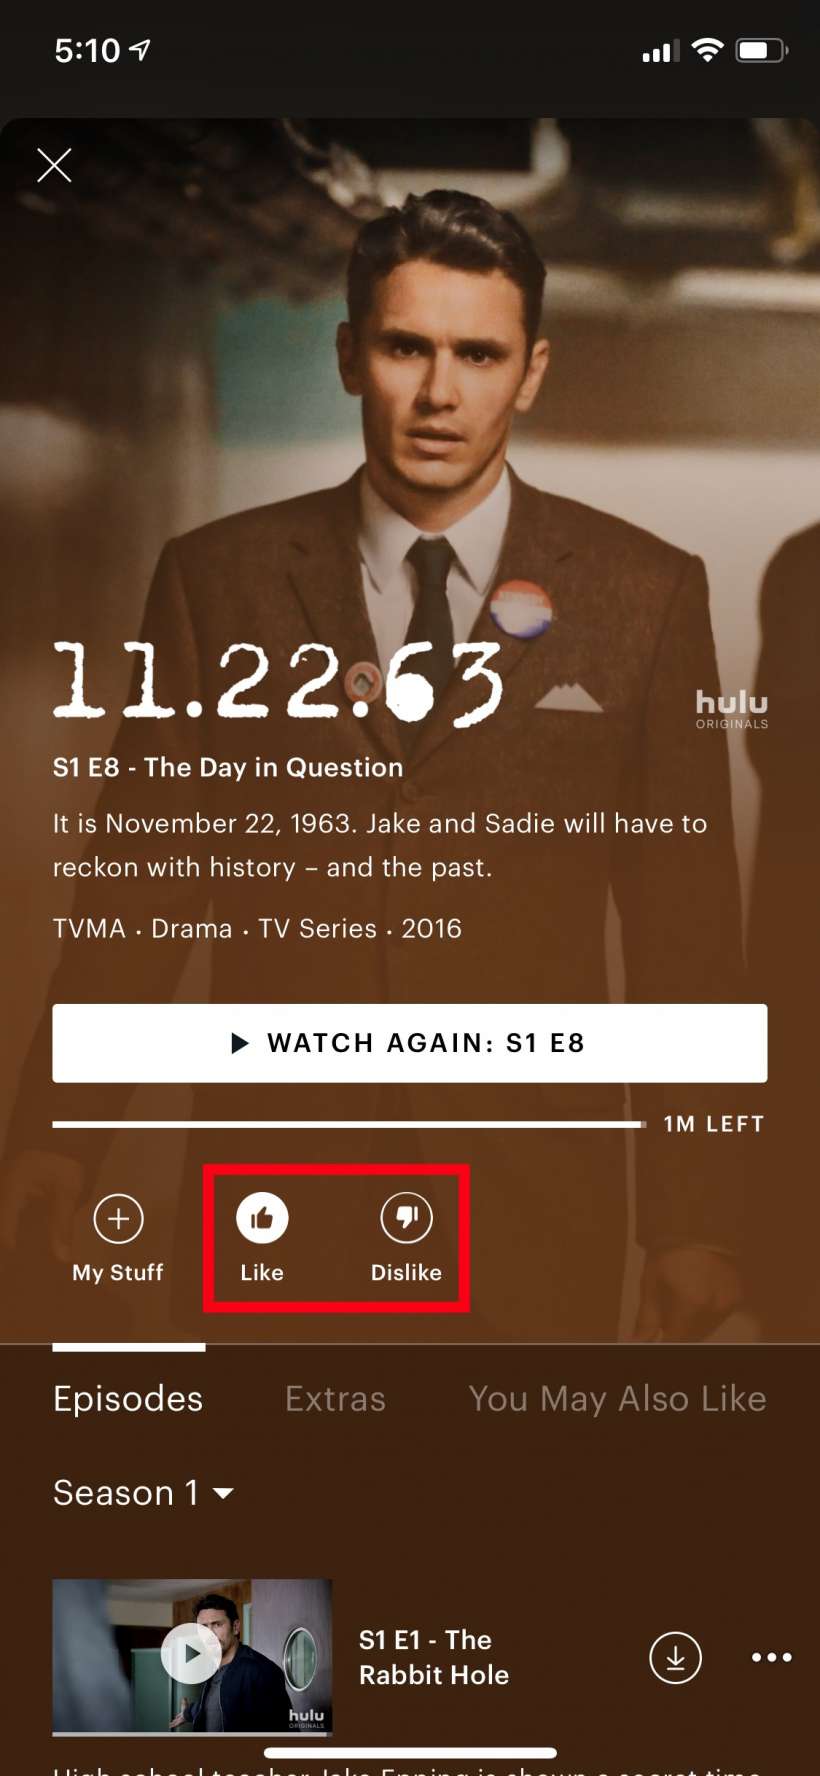 5 نصائح لتحسين تجربة Hulu الخاصة بك 15